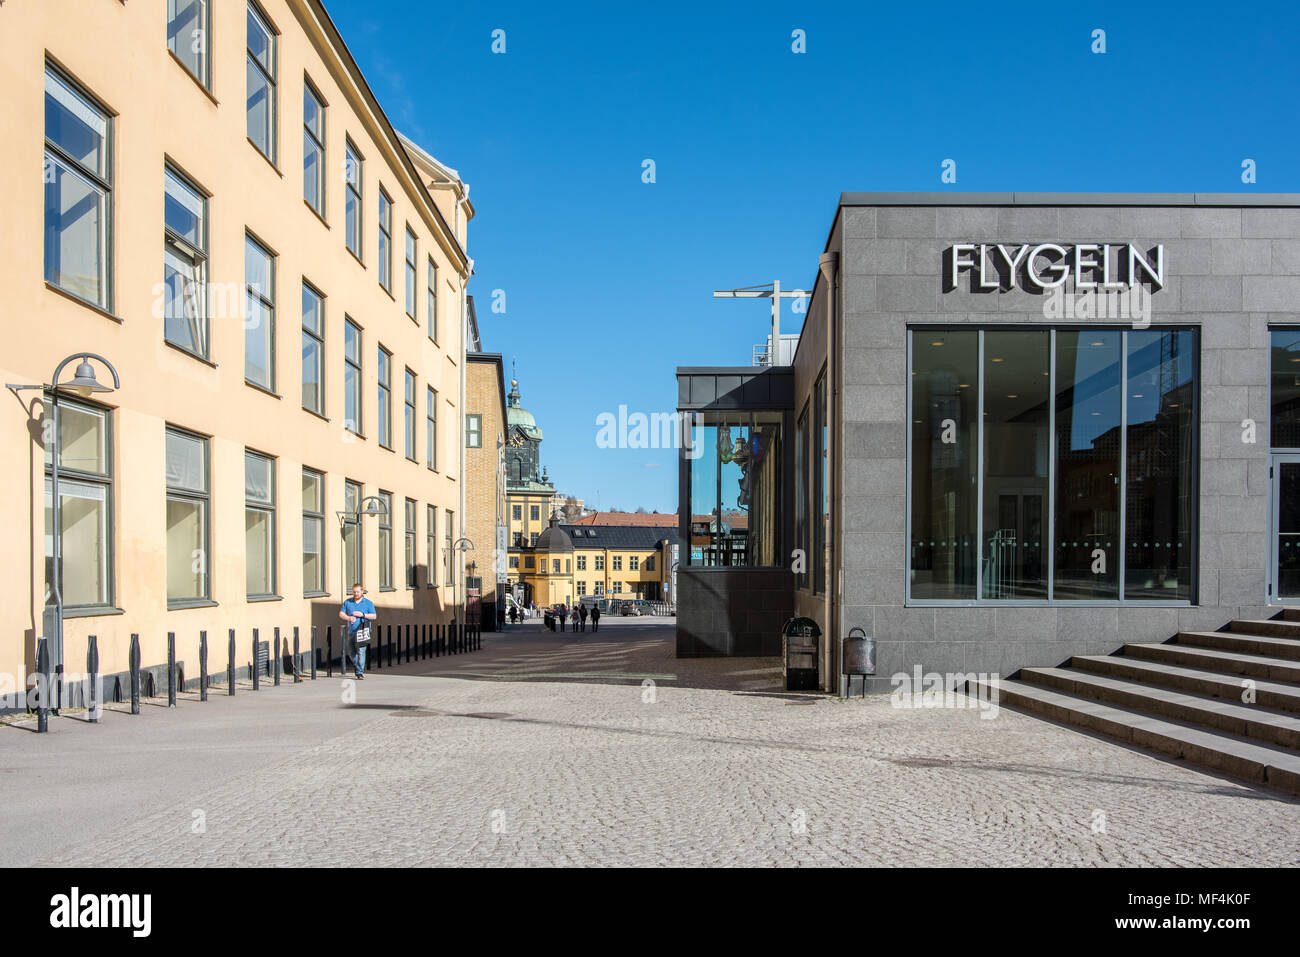 Flygeln Konzert- und Gebäude in der indsutrial Landschaft von Norrköping. Norrköping ist eine historische Stadt in Schweden. Stockfoto